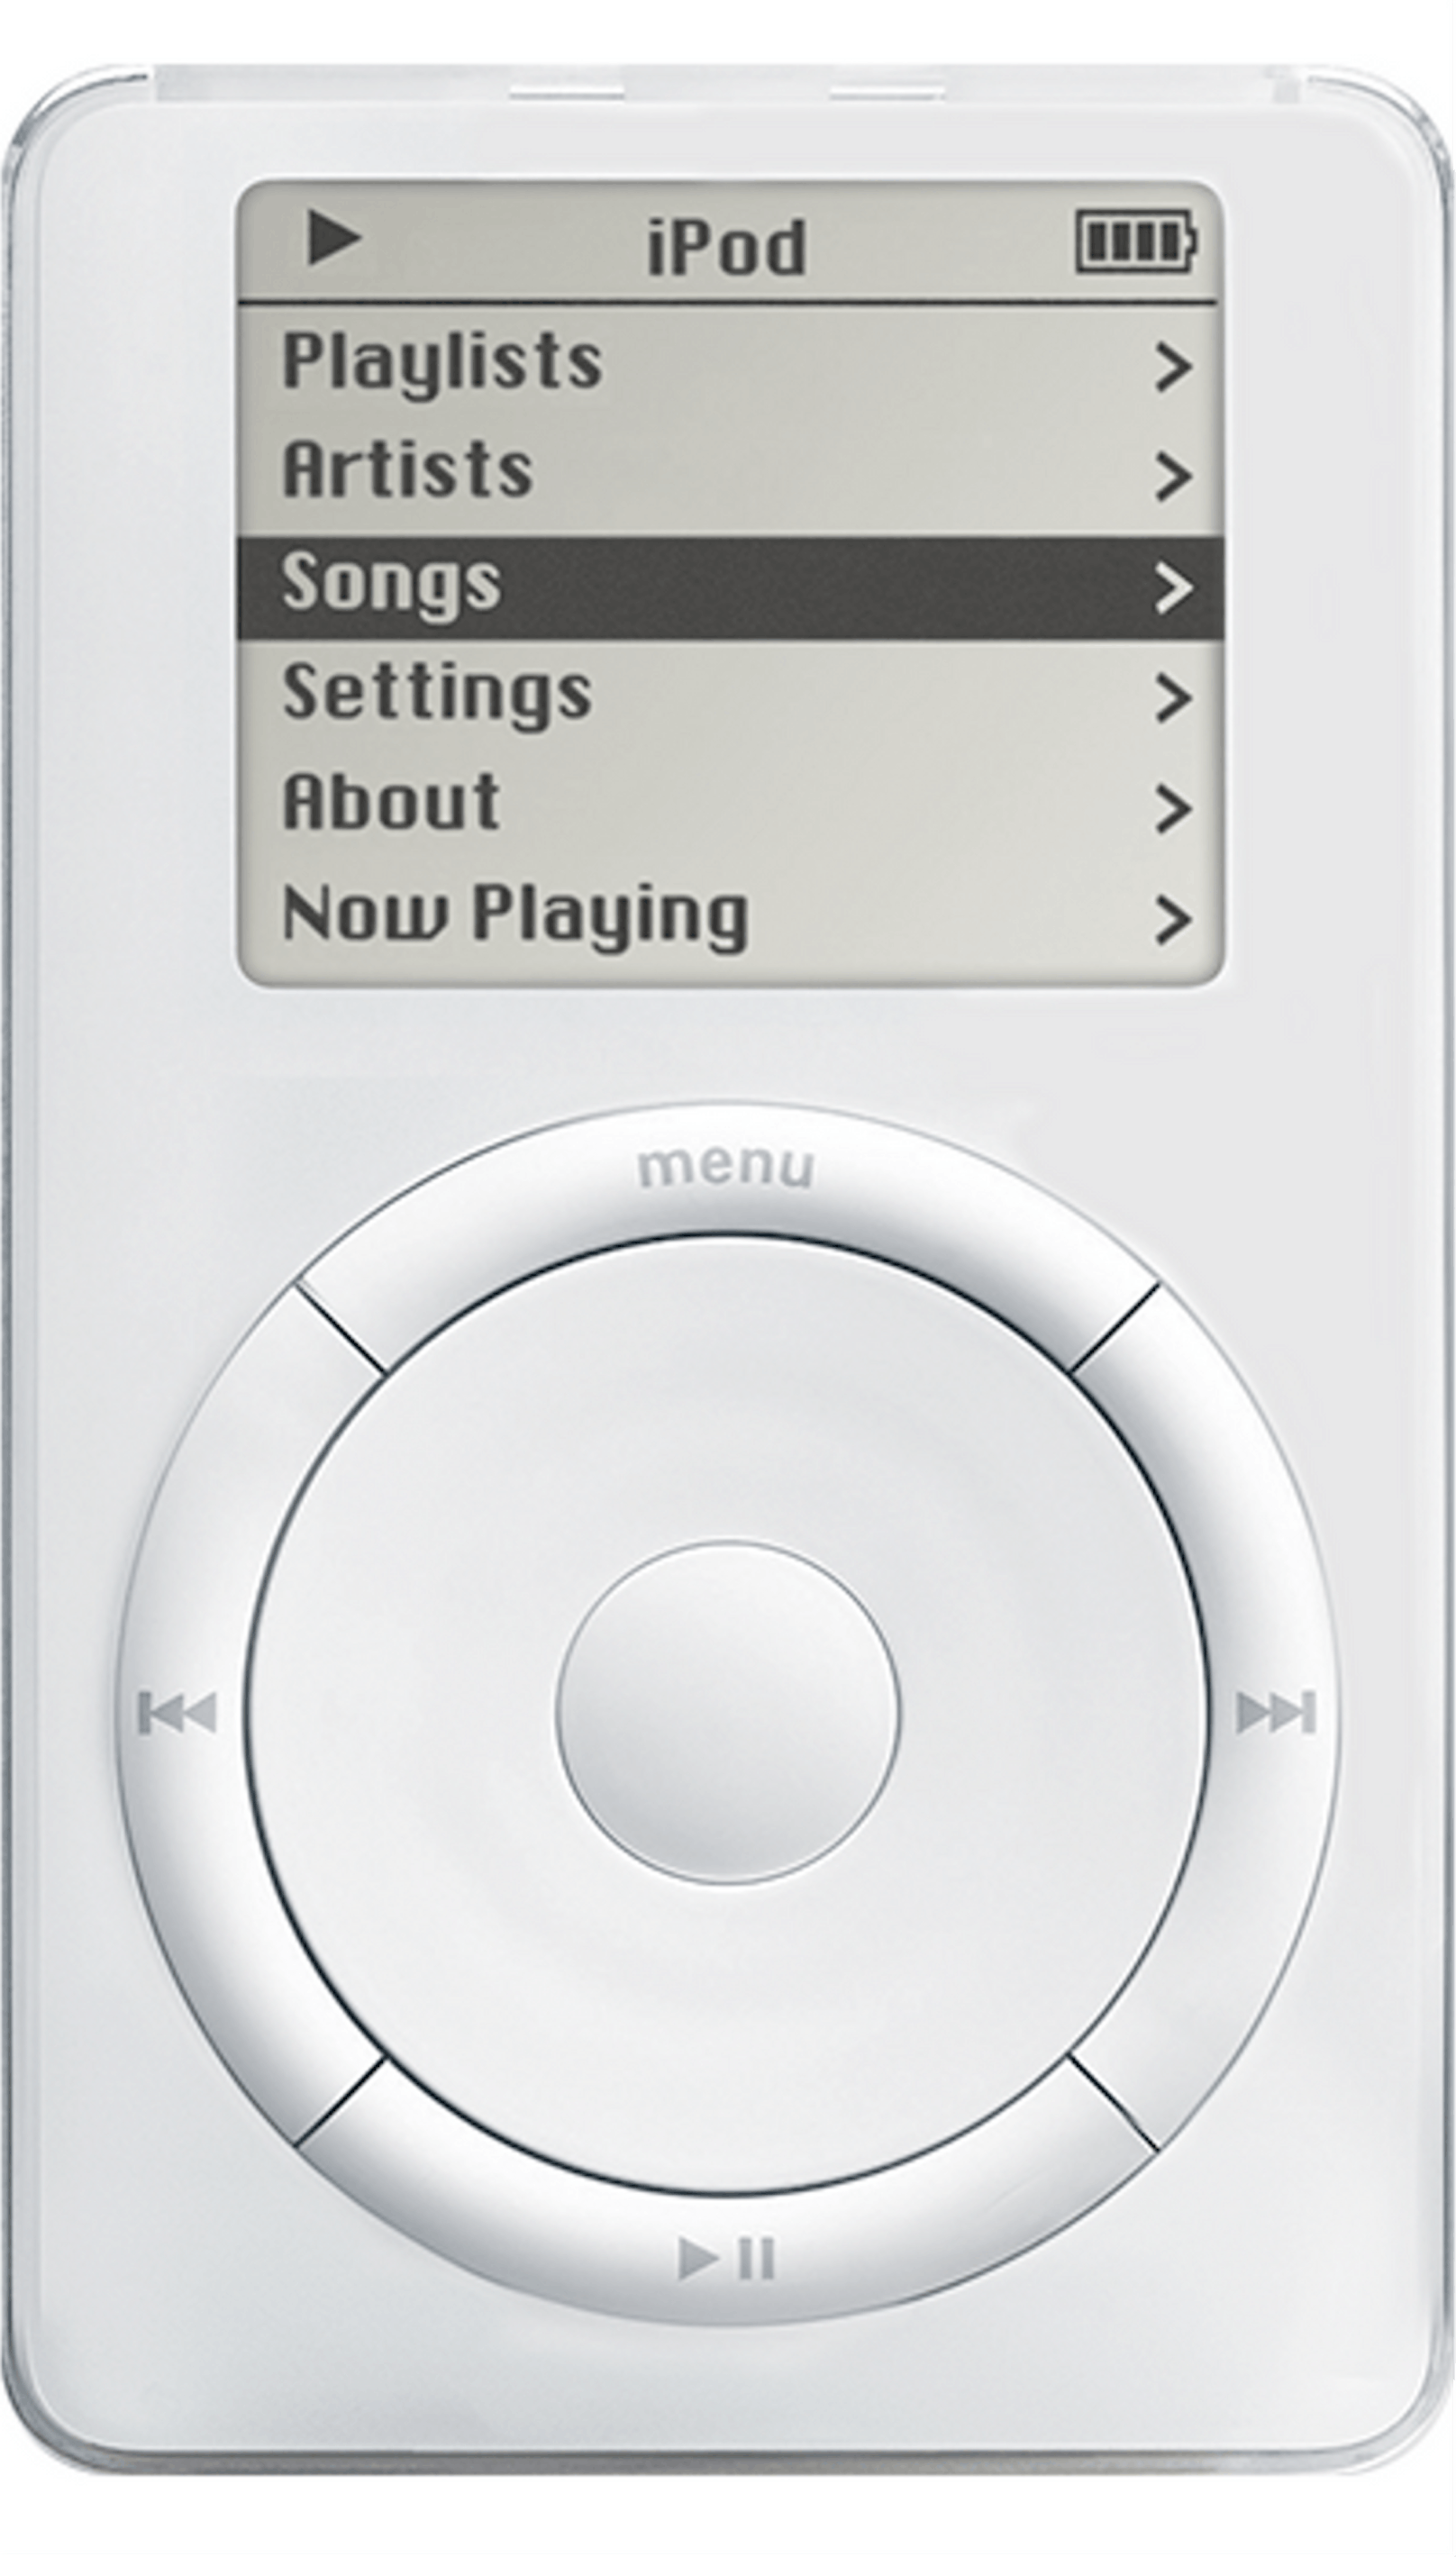 Dieses erinnert an den ersten iPod, einen MP3-Player, den Apple einst verkaufte.